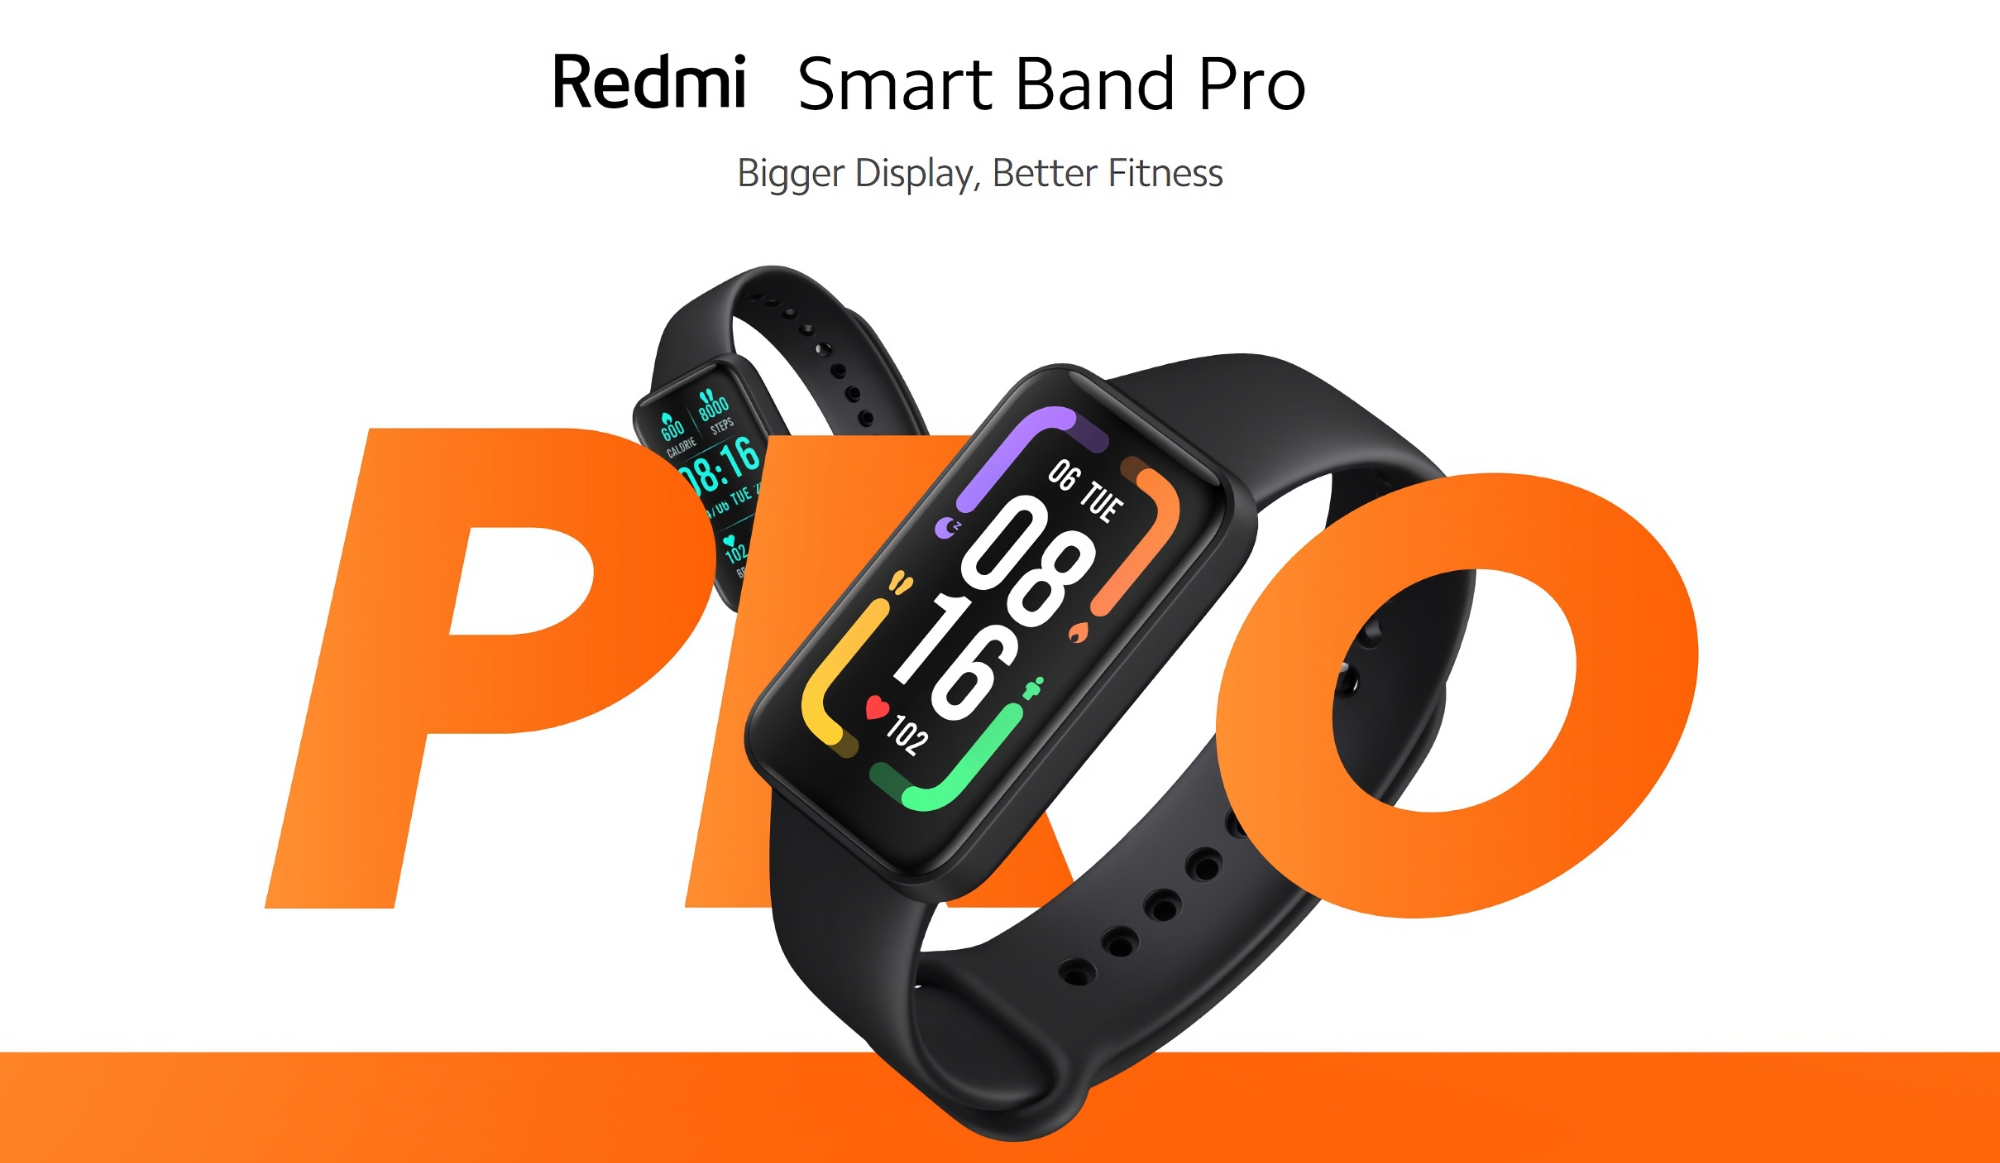 Redmi Smart Band Pro su Amazon: un braccialetto intelligente con display AMOLED, cardiofrequenzimetro e fino a 20 giorni di autonomia con uno sconto di 25 euro